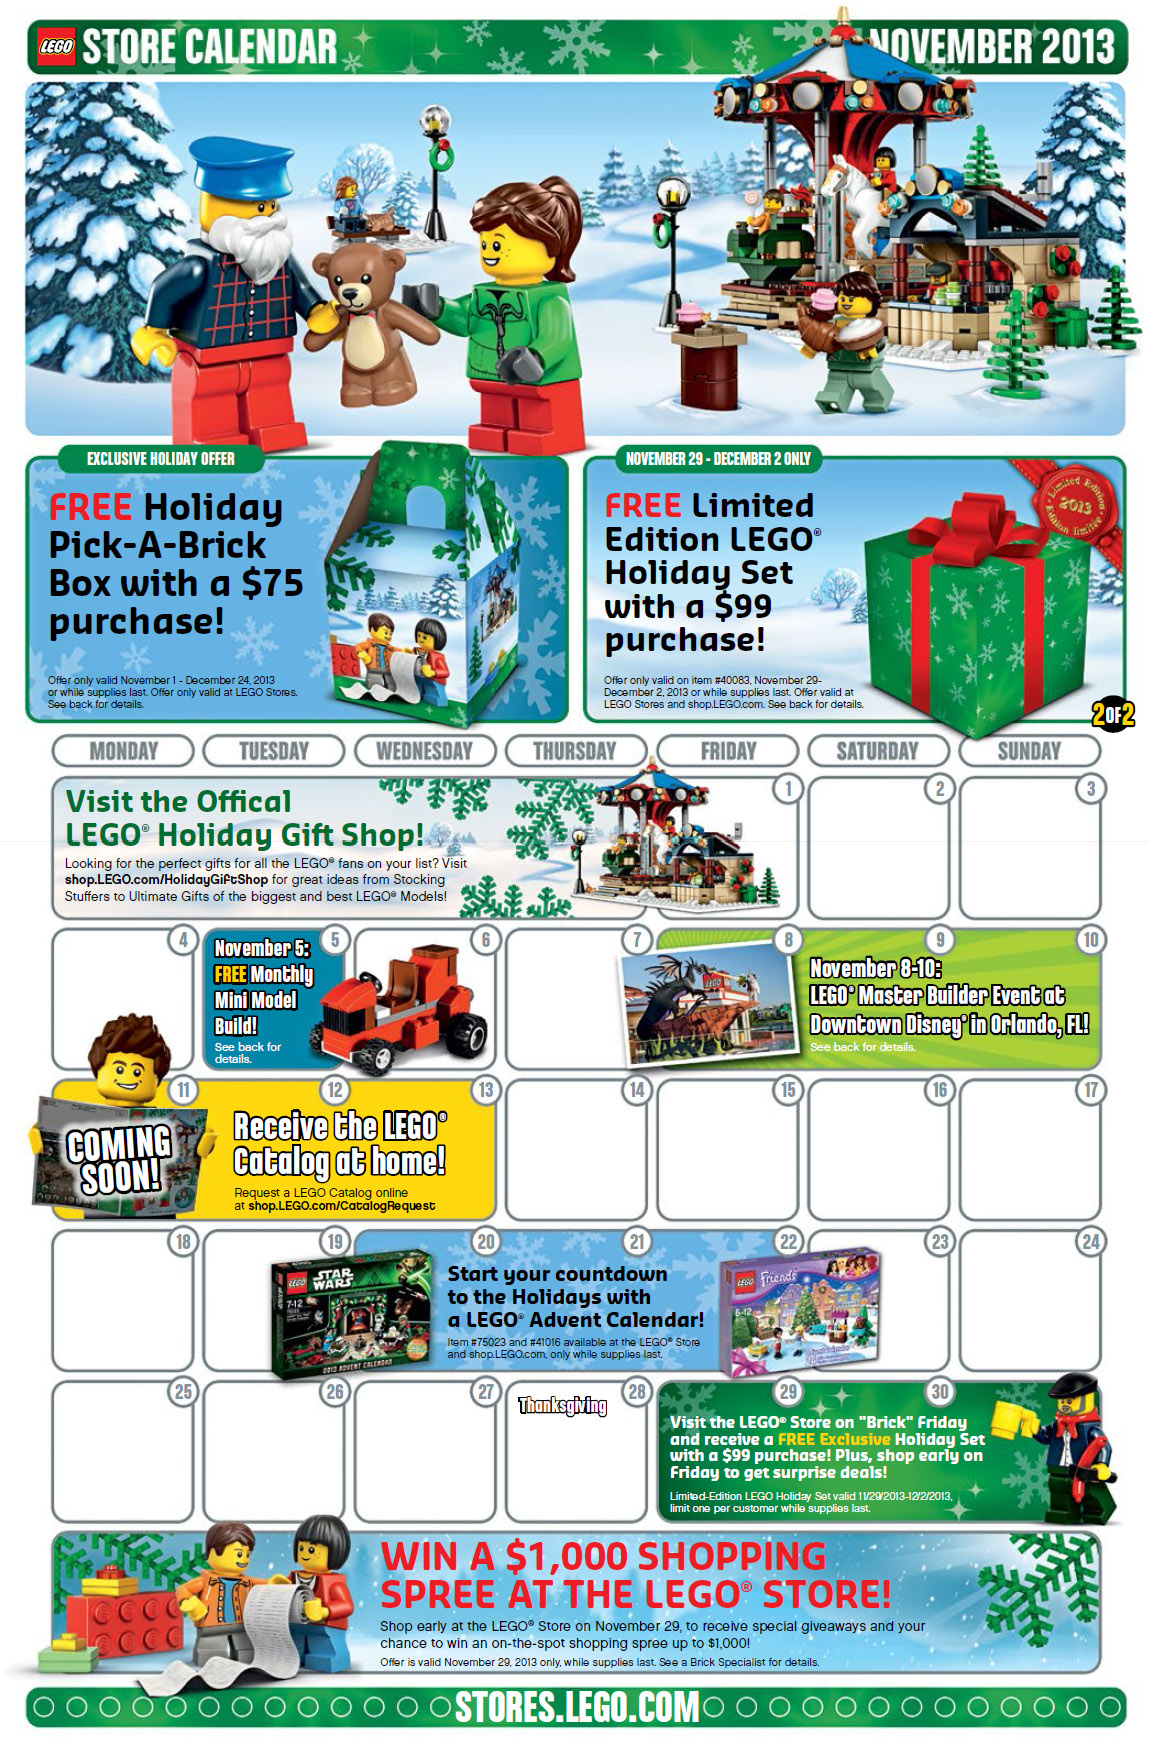 November-2013-LEGO-Store-Calendar.jpg